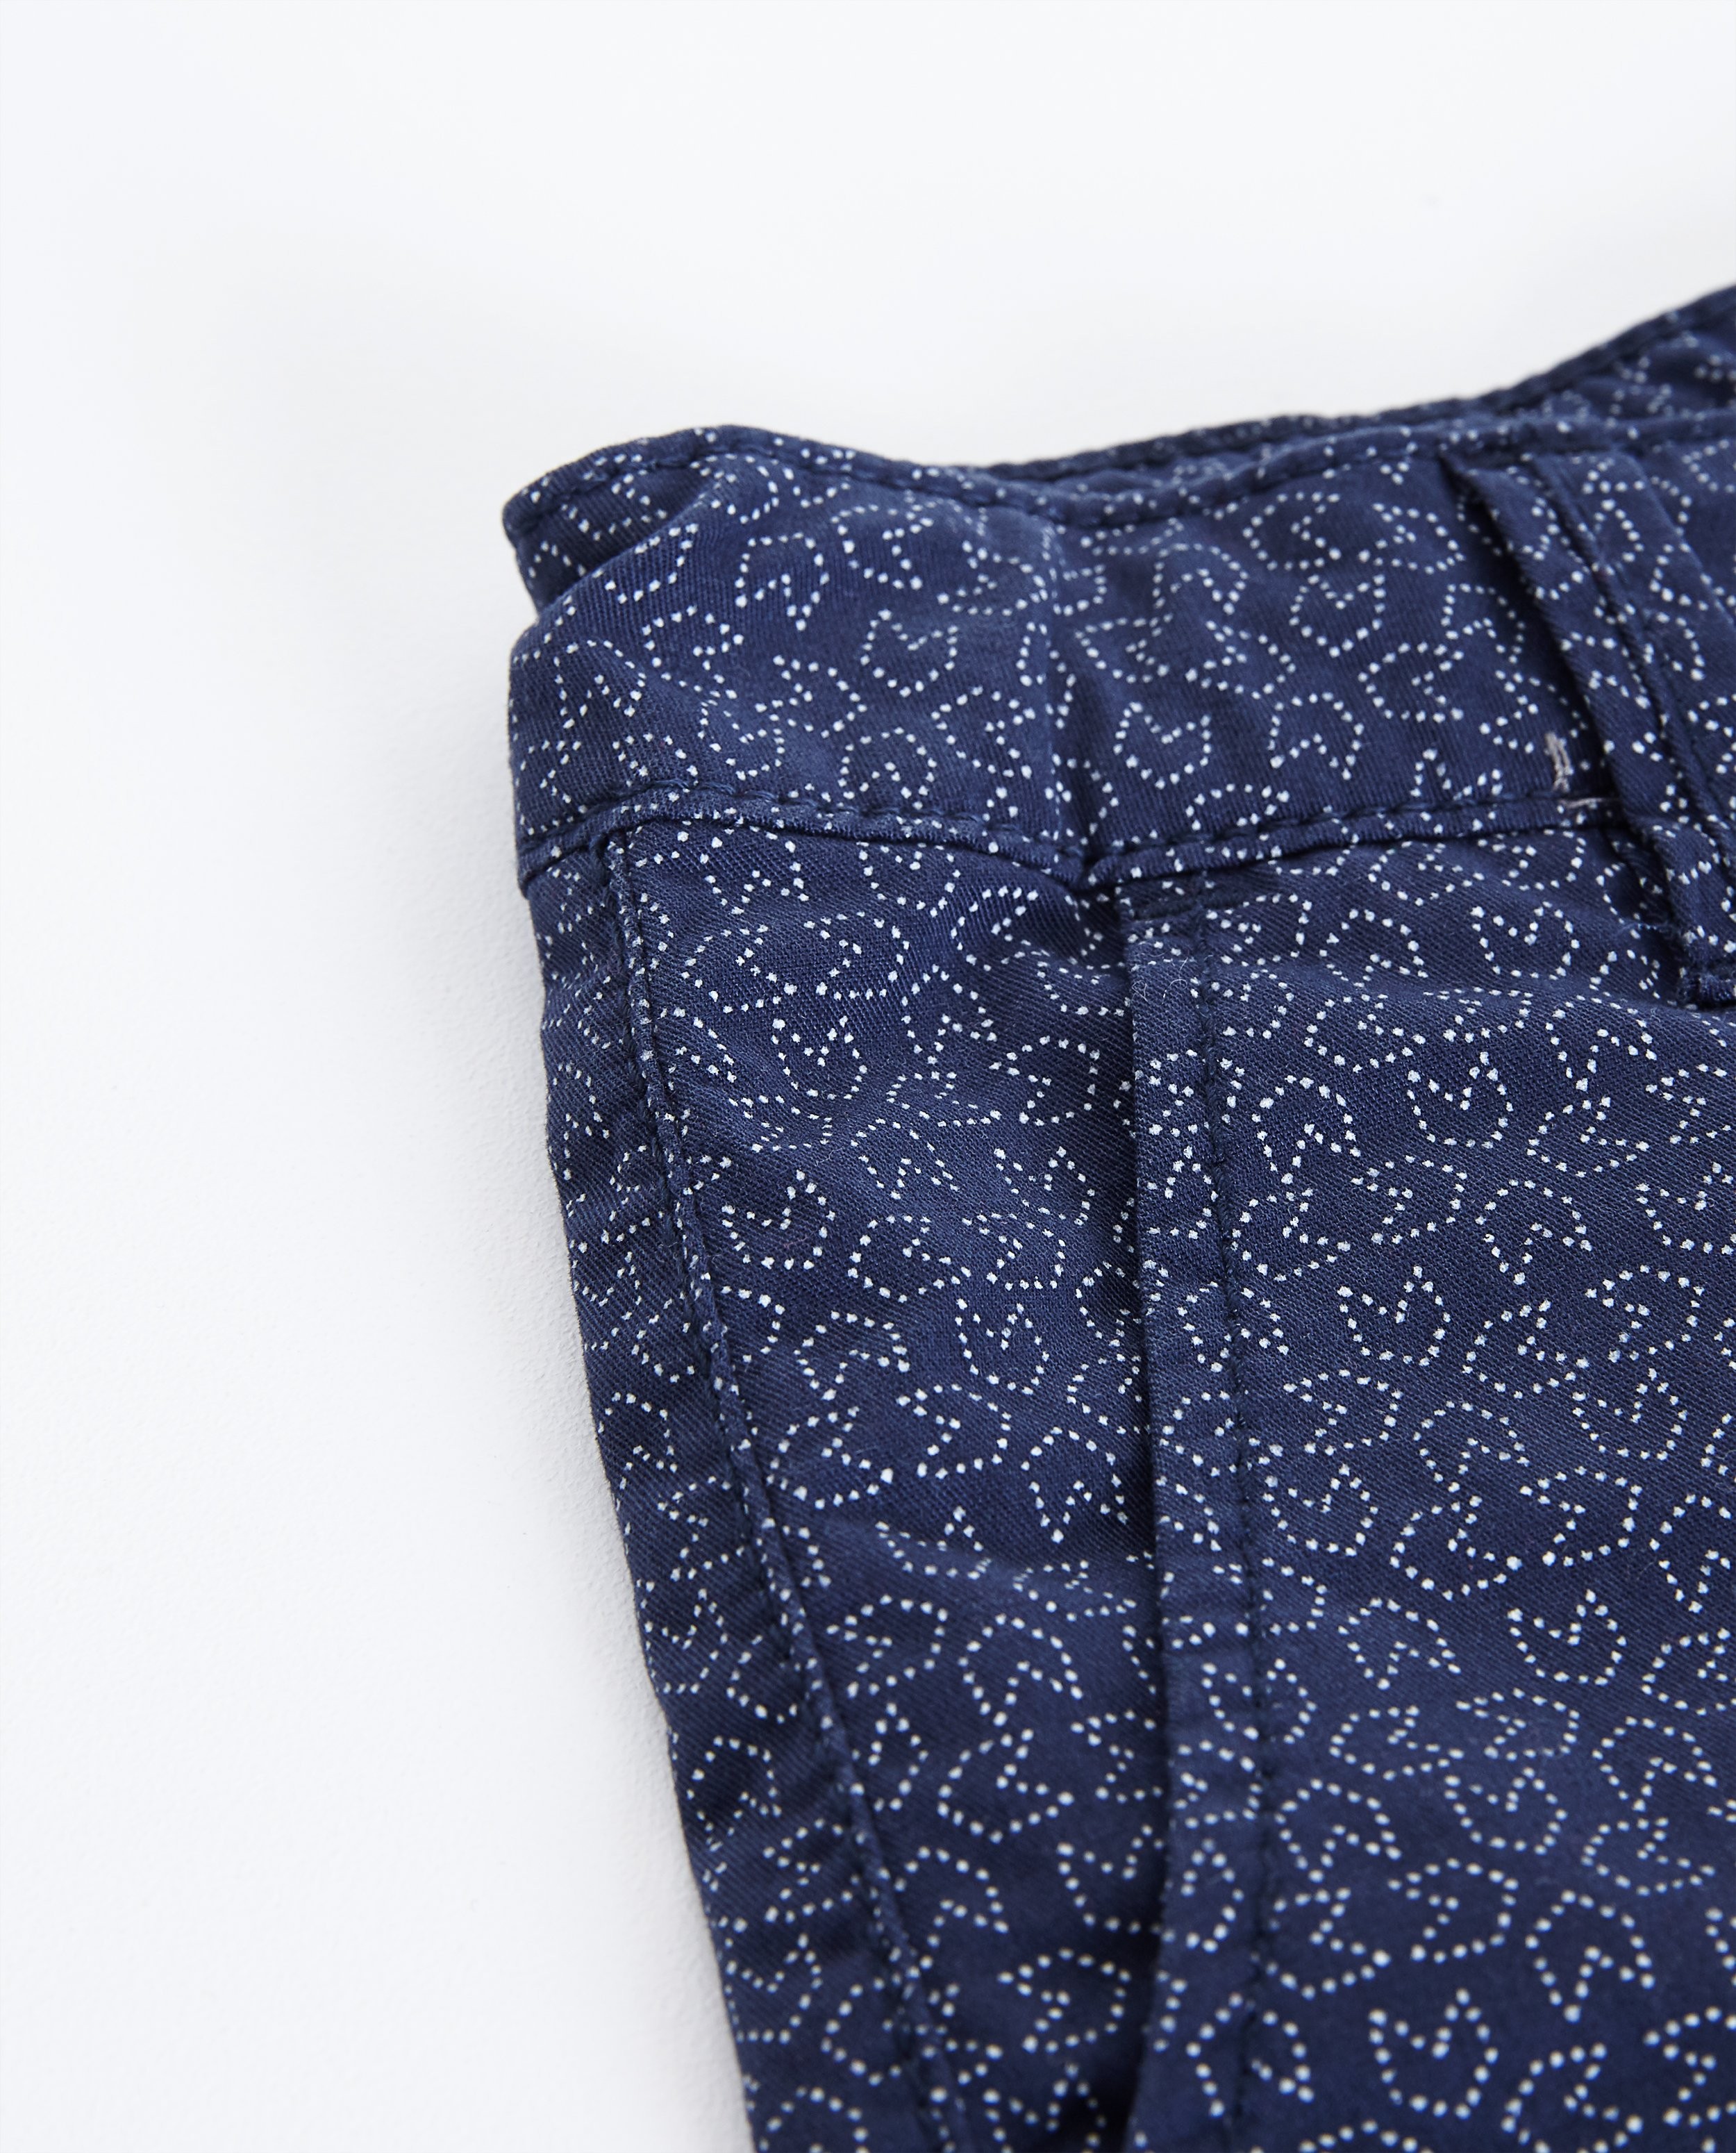 Shorts - Donkerblauwe chinoshort met print